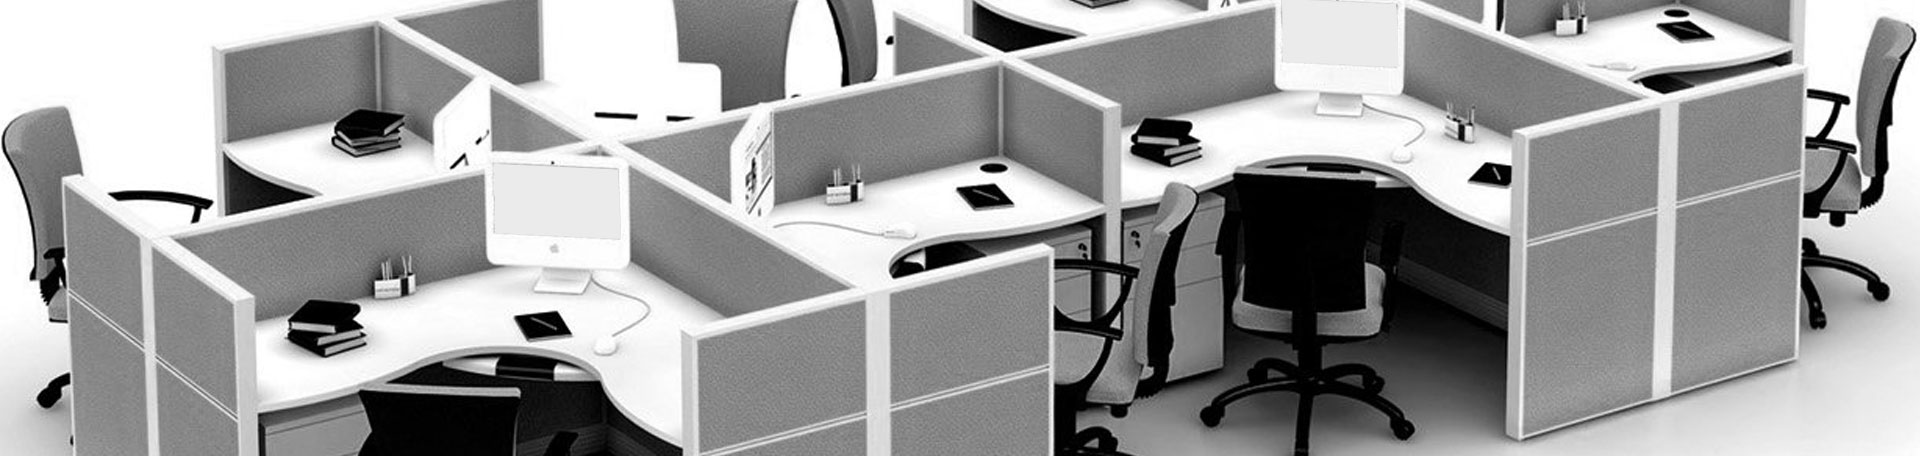 Multi tasking workstation for office space in Gurugram